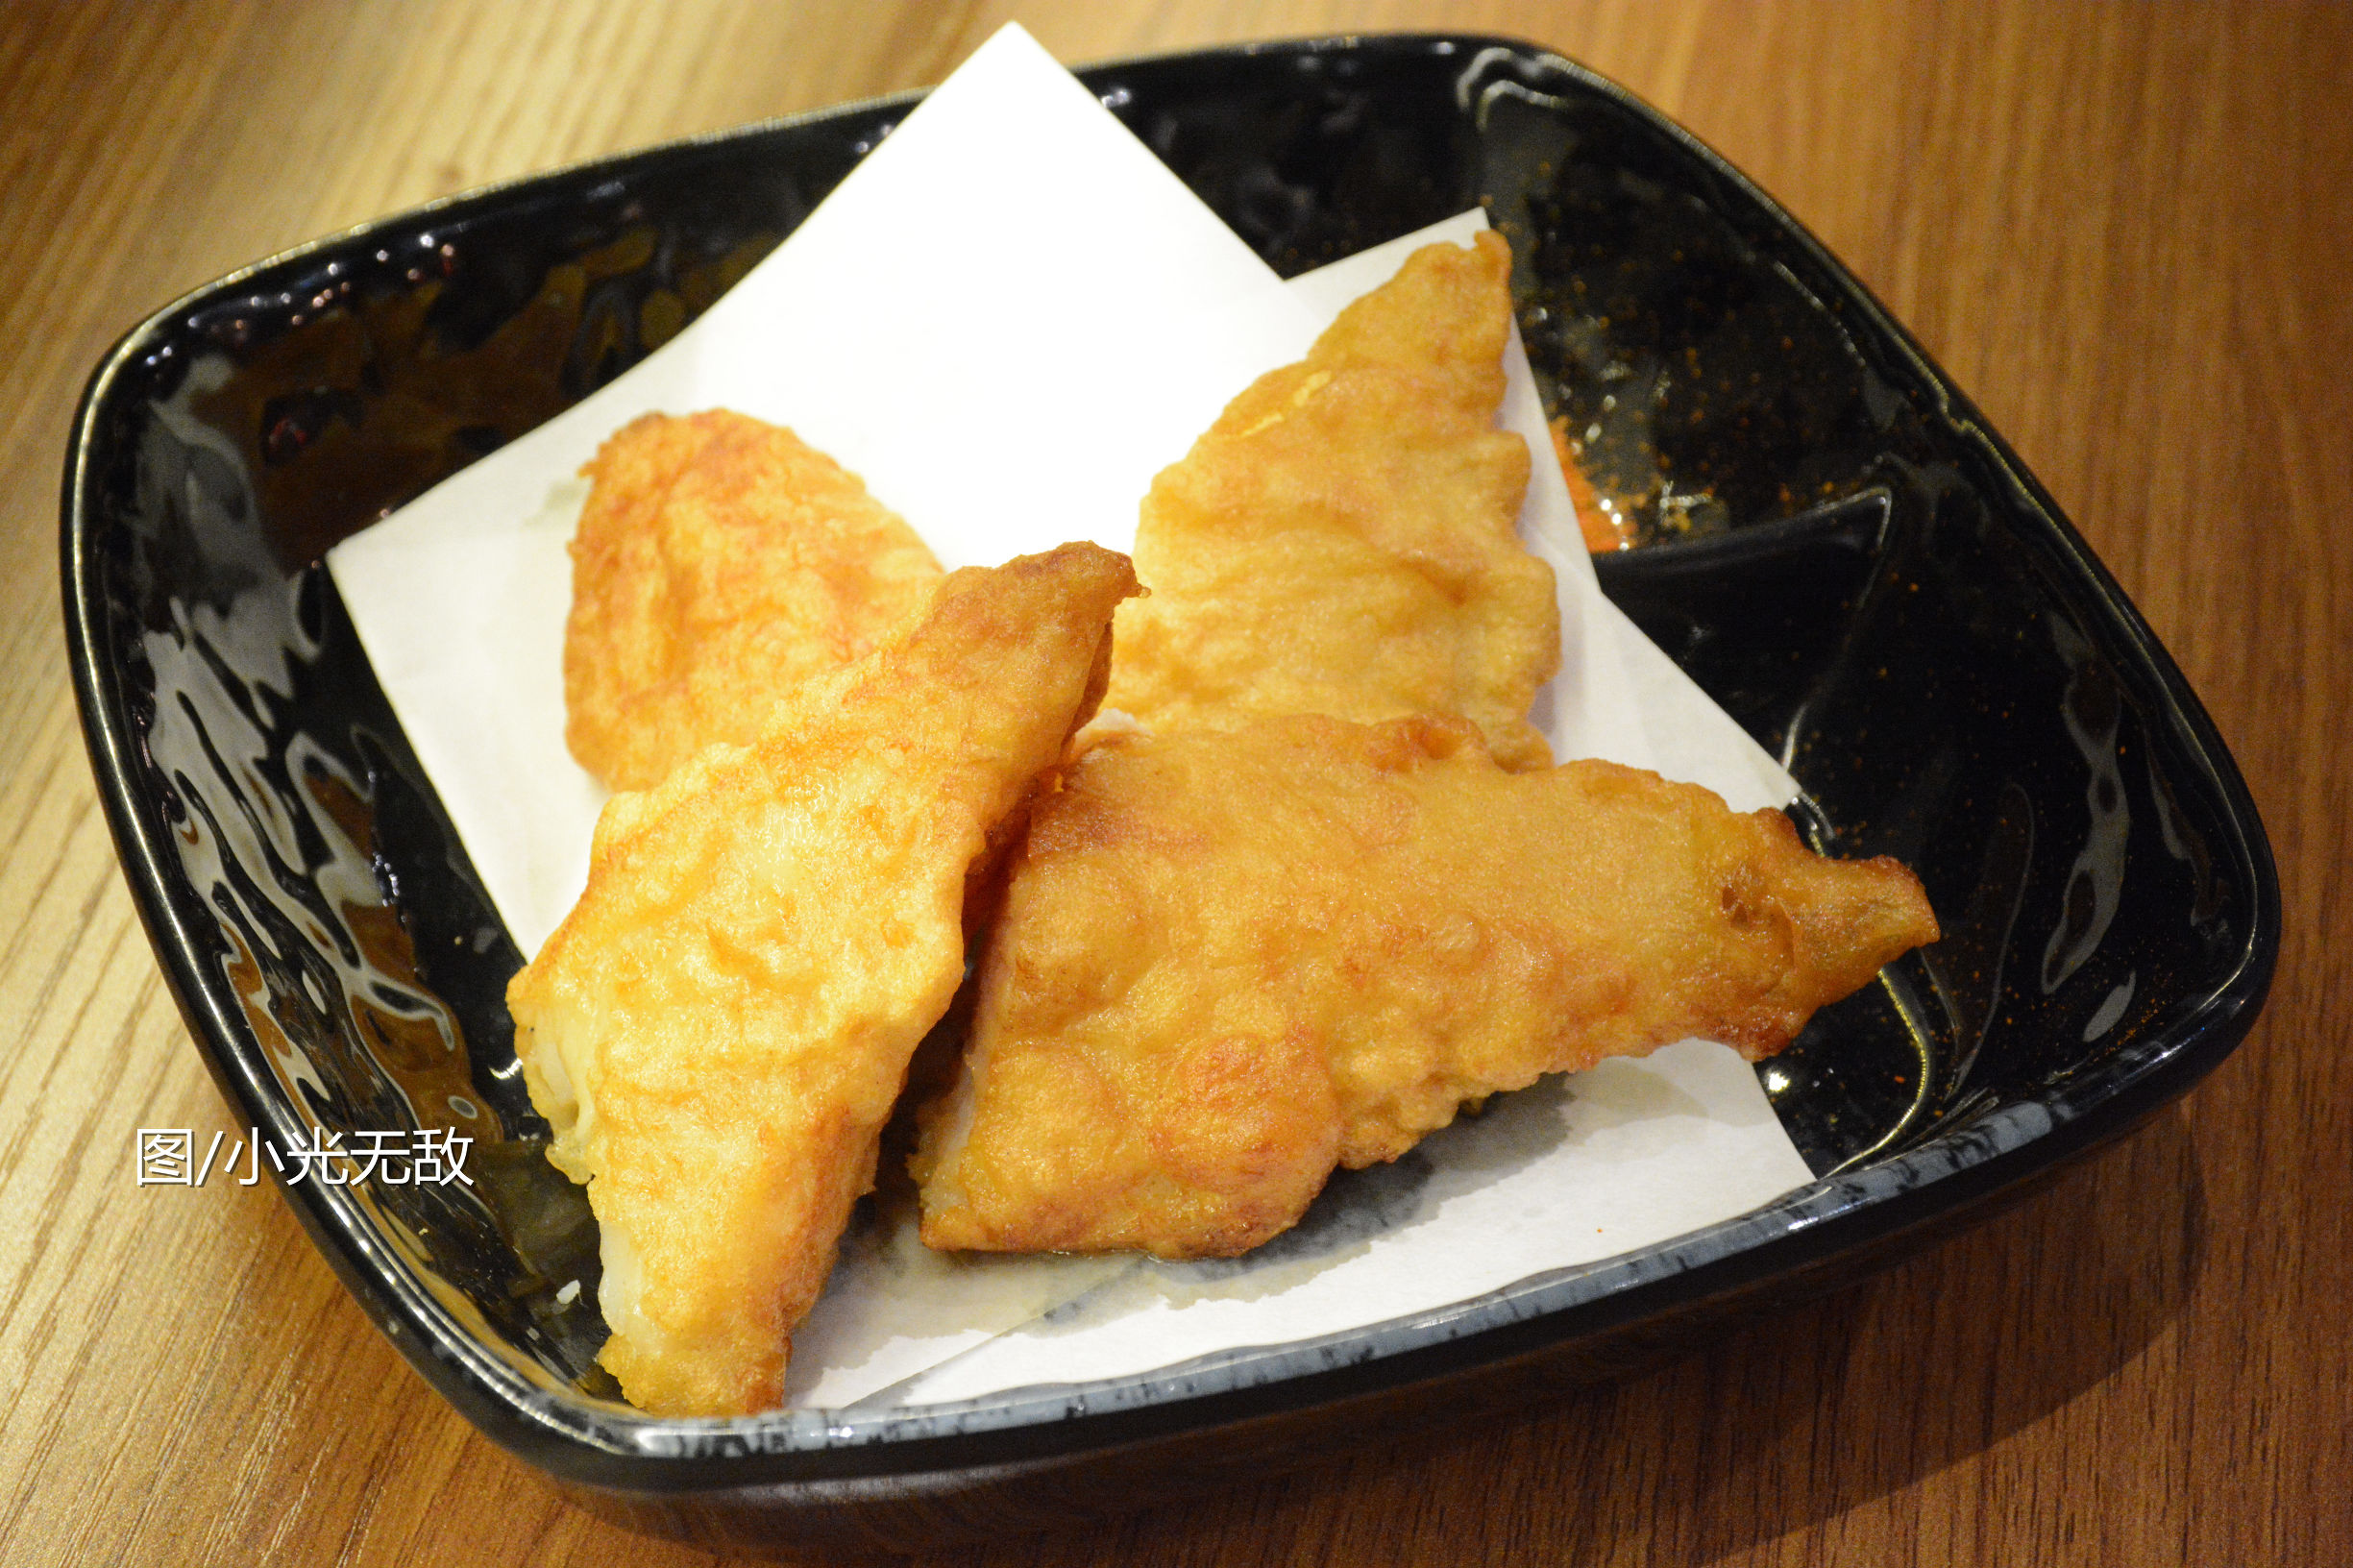 日式简餐遇上日式牛排——探店“烧鸟&赞”